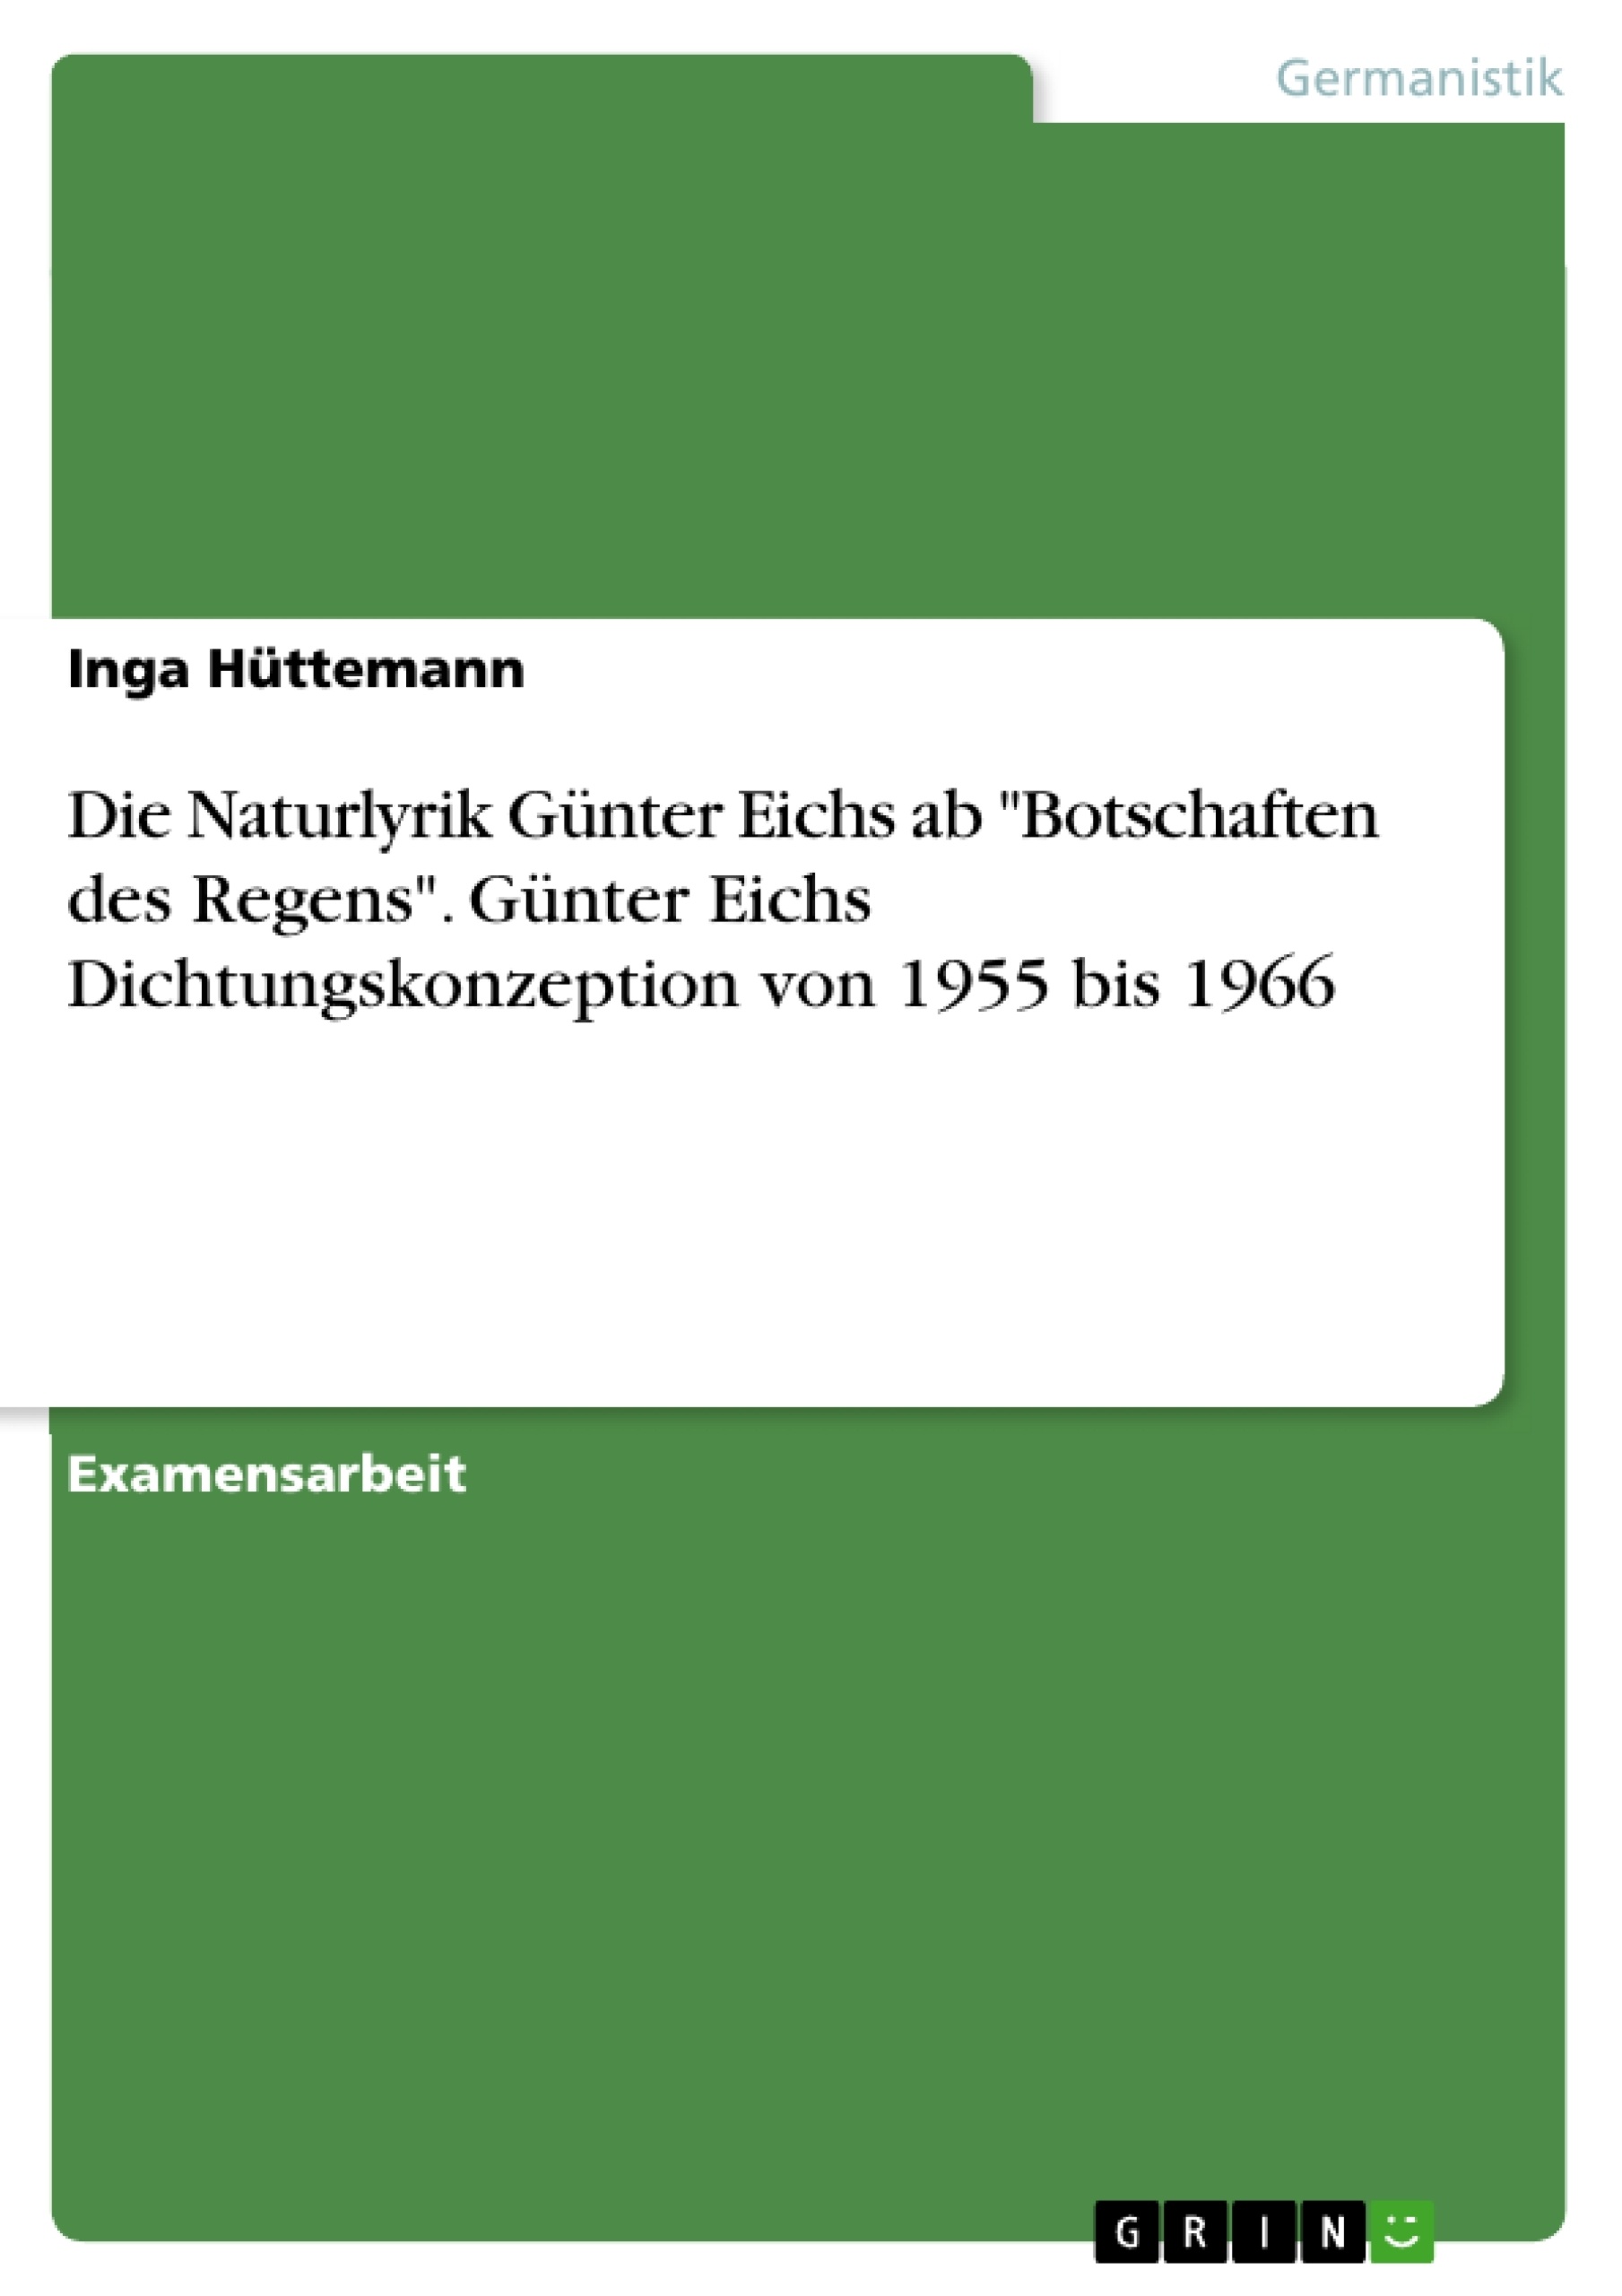 Title: Die Naturlyrik Günter Eichs ab "Botschaften des Regens". Günter Eichs Dichtungskonzeption von 1955 bis 1966